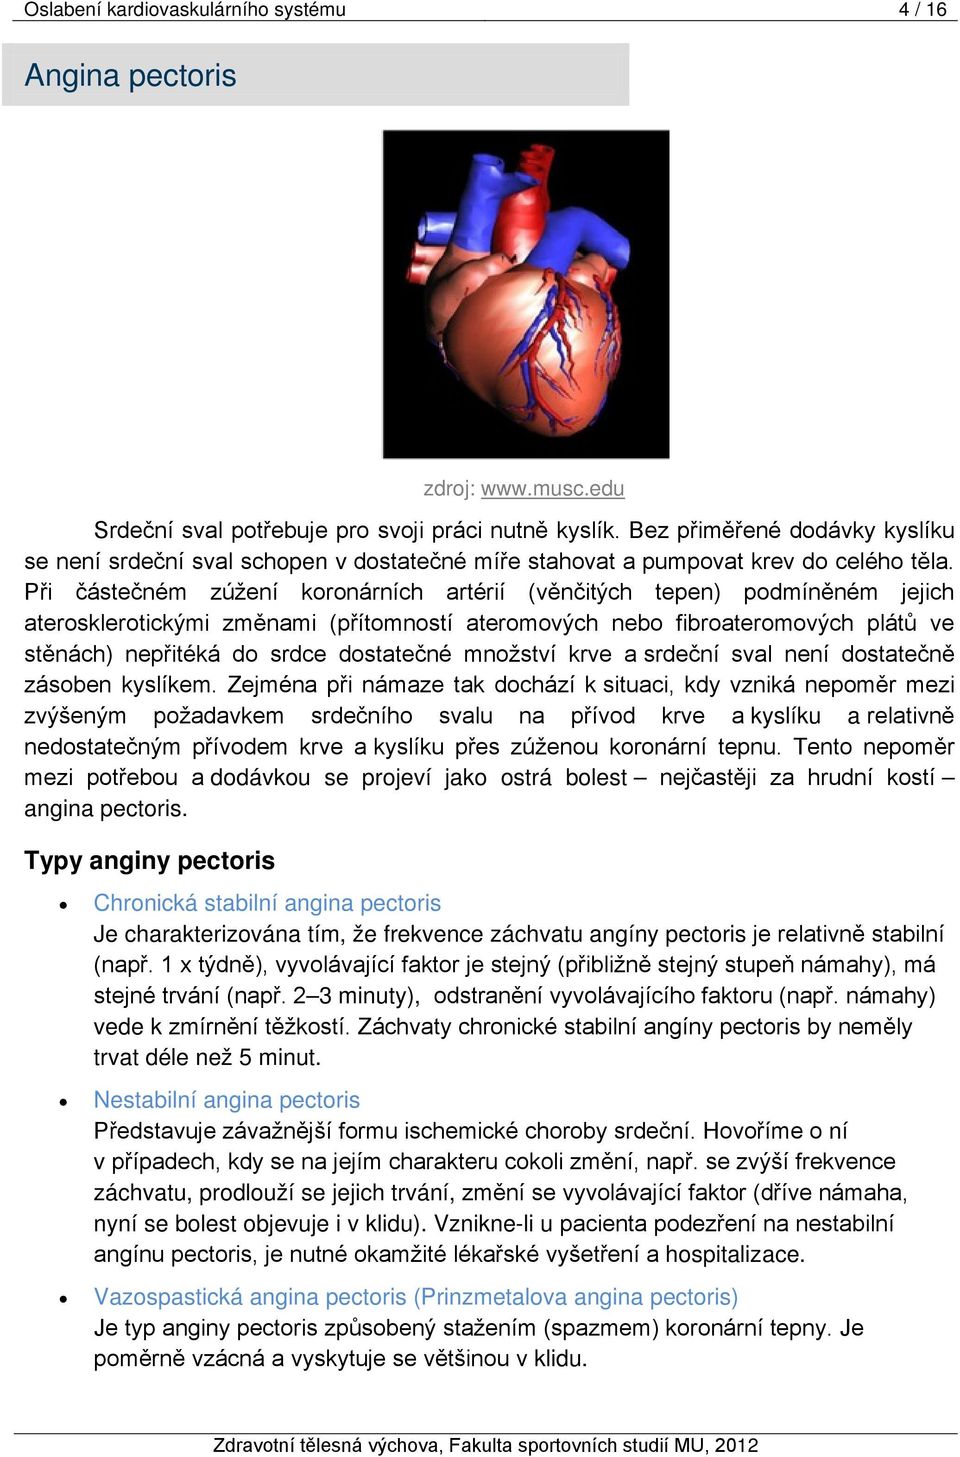 Při částečném zúžení koronárních artérií (věnčitých tepen) podmíněném jejich aterosklerotickými změnami (přítomností ateromových nebo fibroateromových plátů ve stěnách) nepřitéká do srdce dostatečné